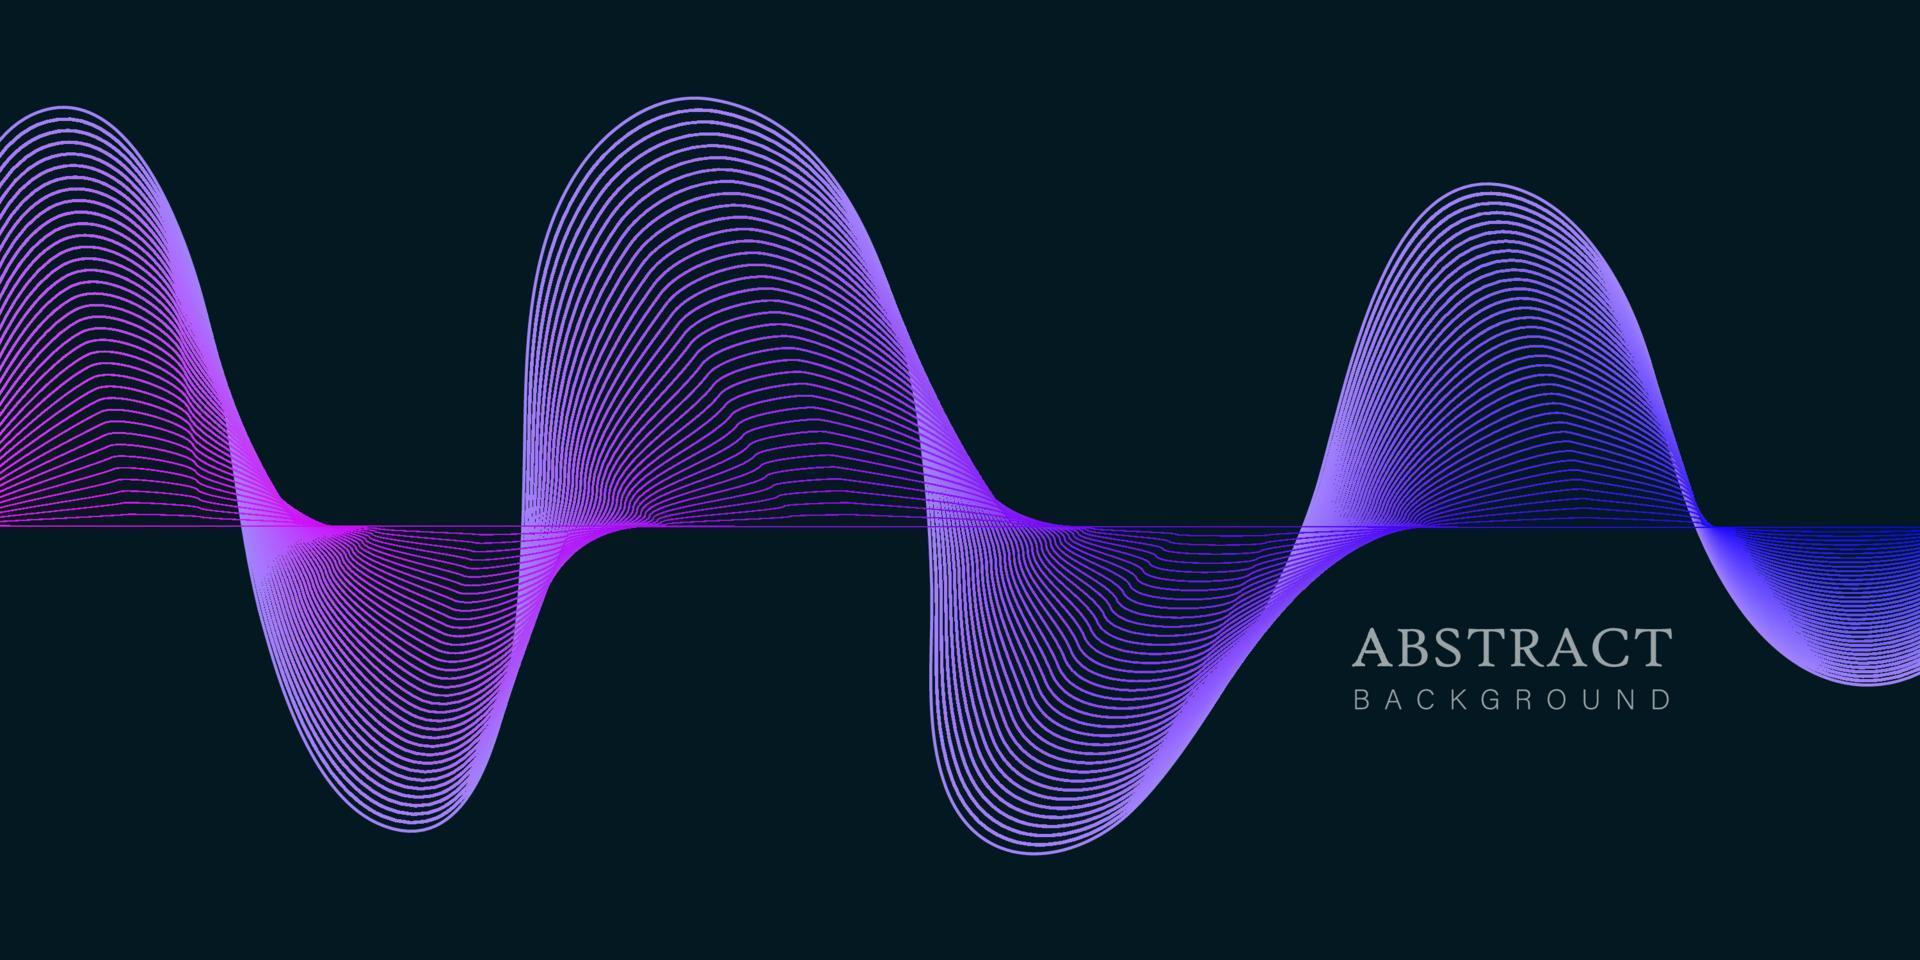 vektor teknik abstrakt bakgrund med dynamiska amorfa vektor flödande gradient partikel vatten kurva vågor och moderna linjer. retro futurism geometrisk, cyberpunk.